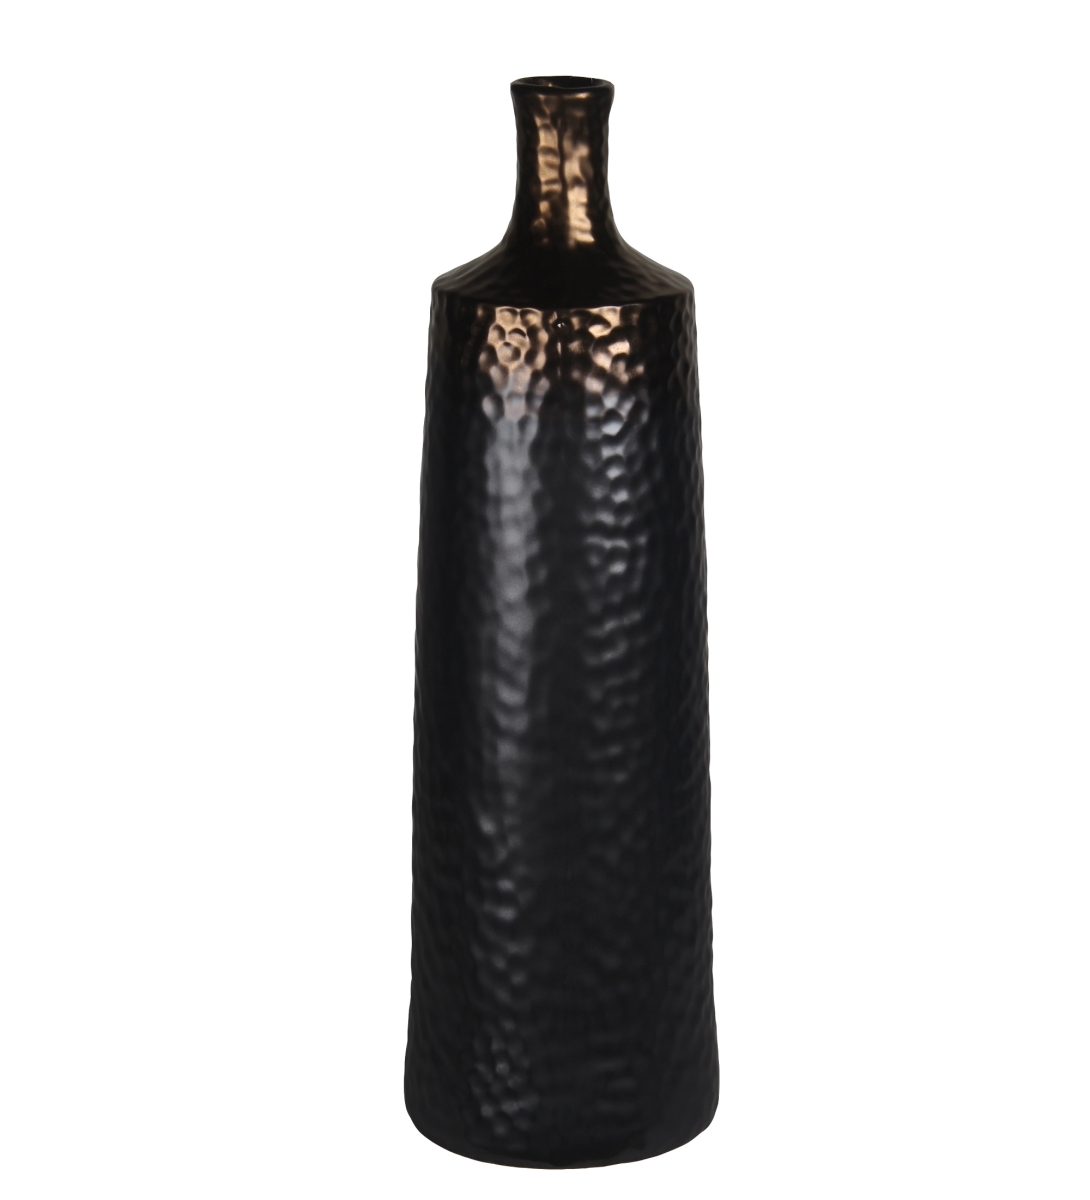 78202 6 X 6 X 18 In. Contemporary Copper & Ceramic Vase, Black - Large